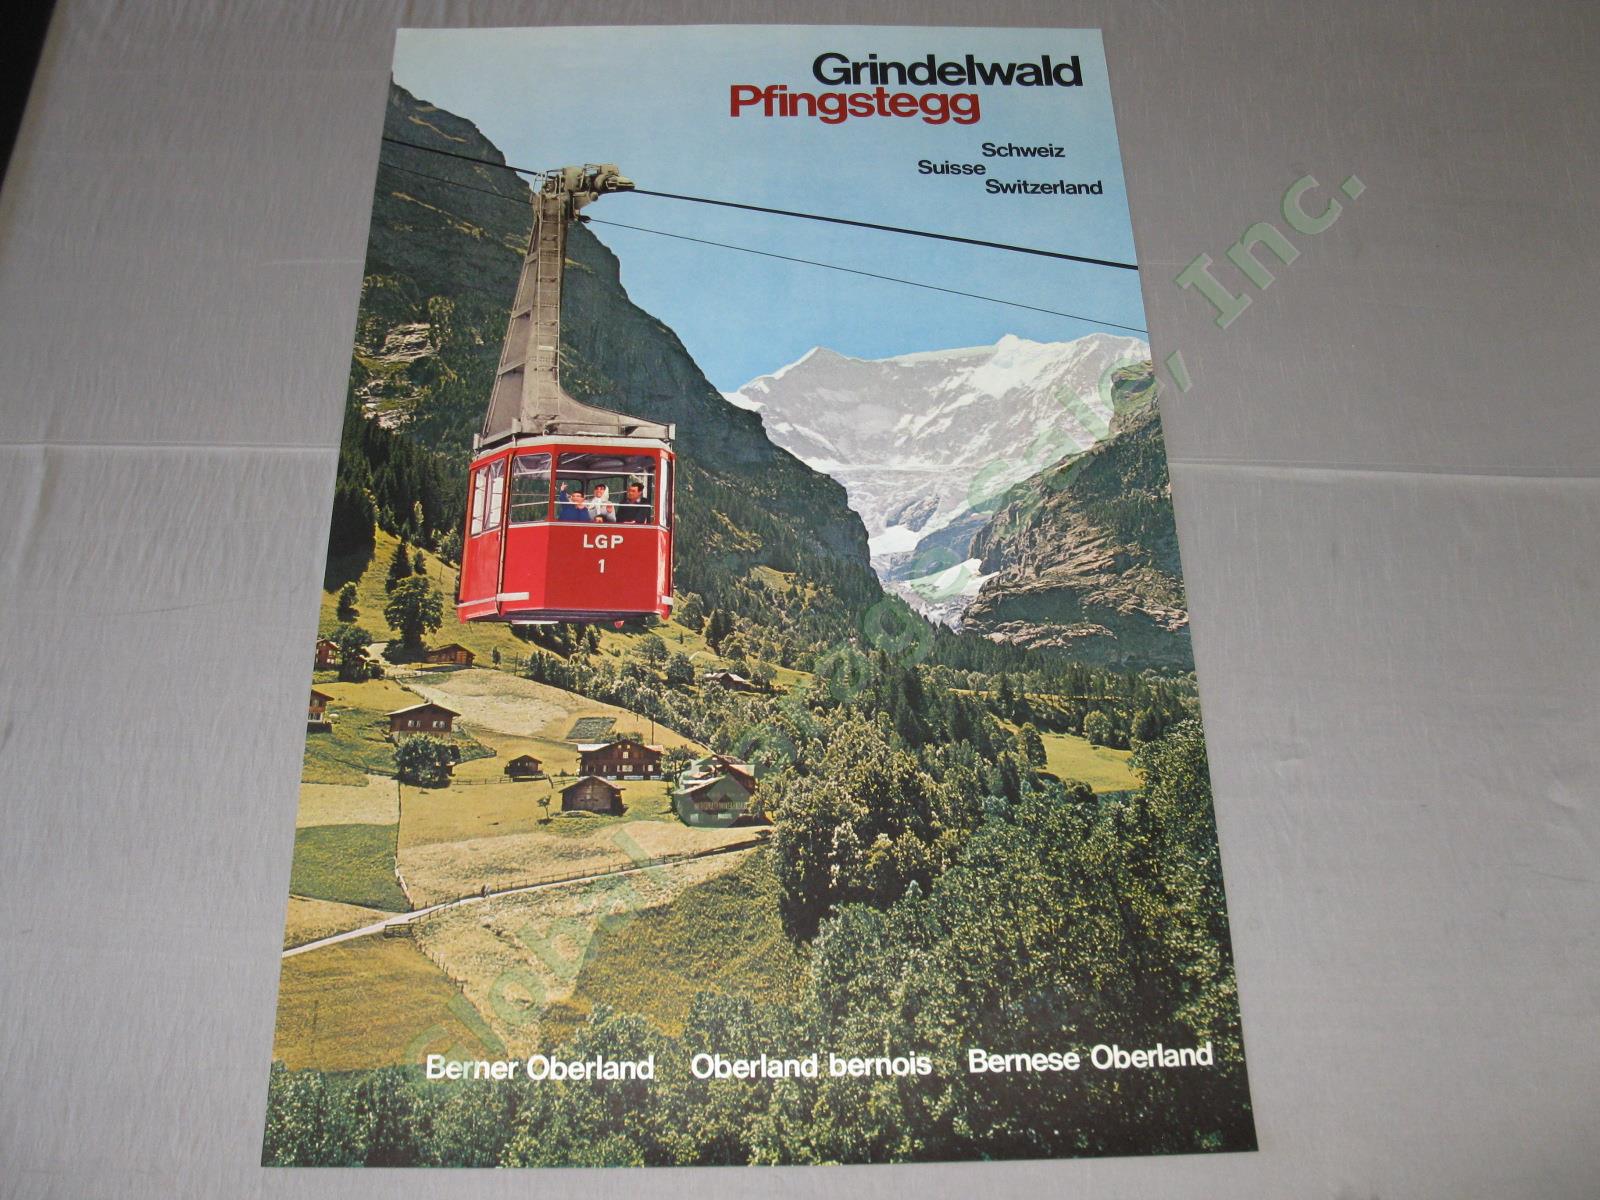 Vtg 1960 Swiss Travel Poster Grindelwald Pfingstegg LGP Cable Car Switzerland NR